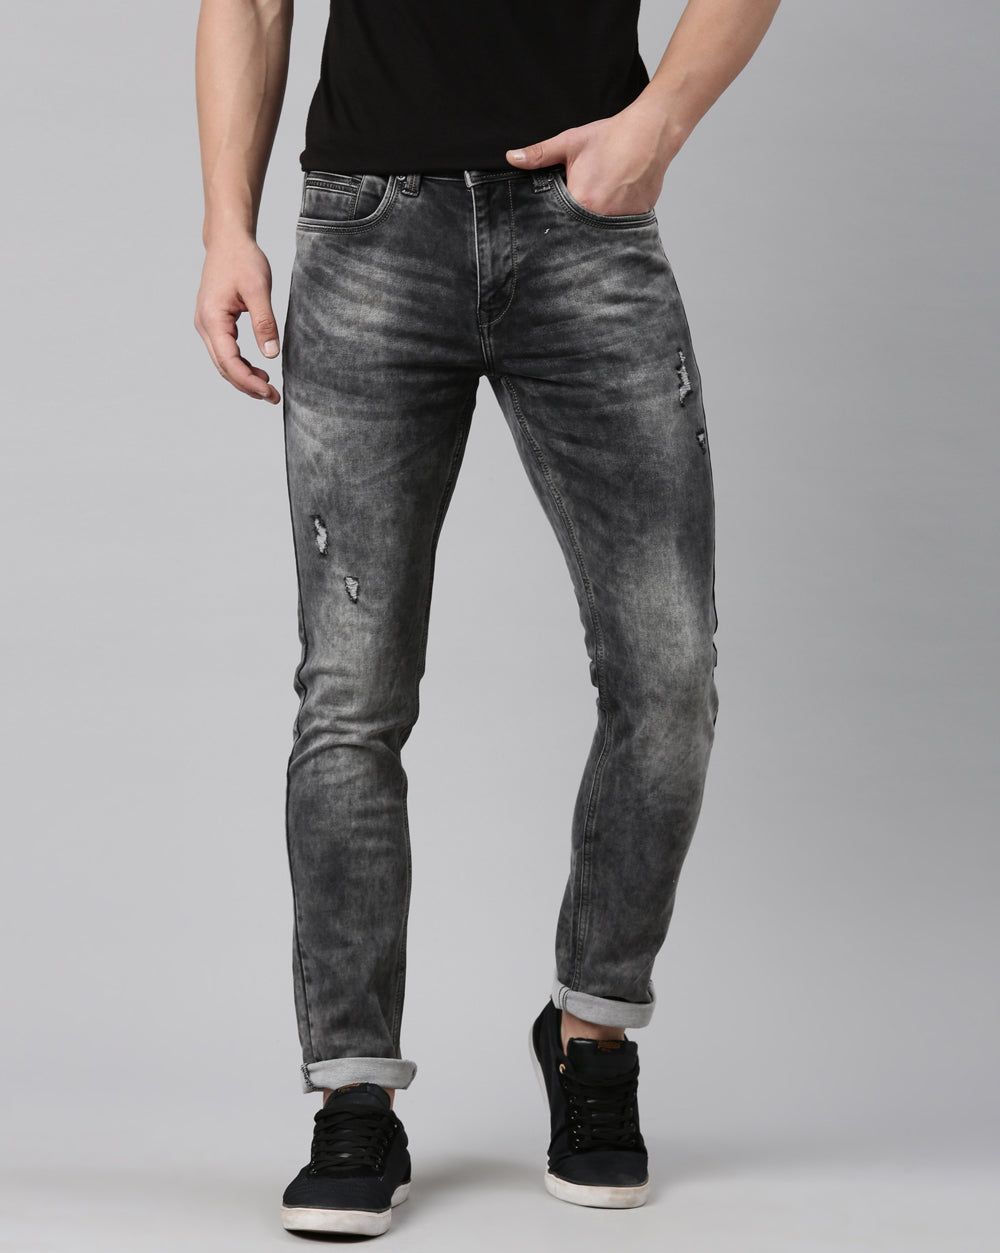 GREY WASHED DENIM Jeans For Men 